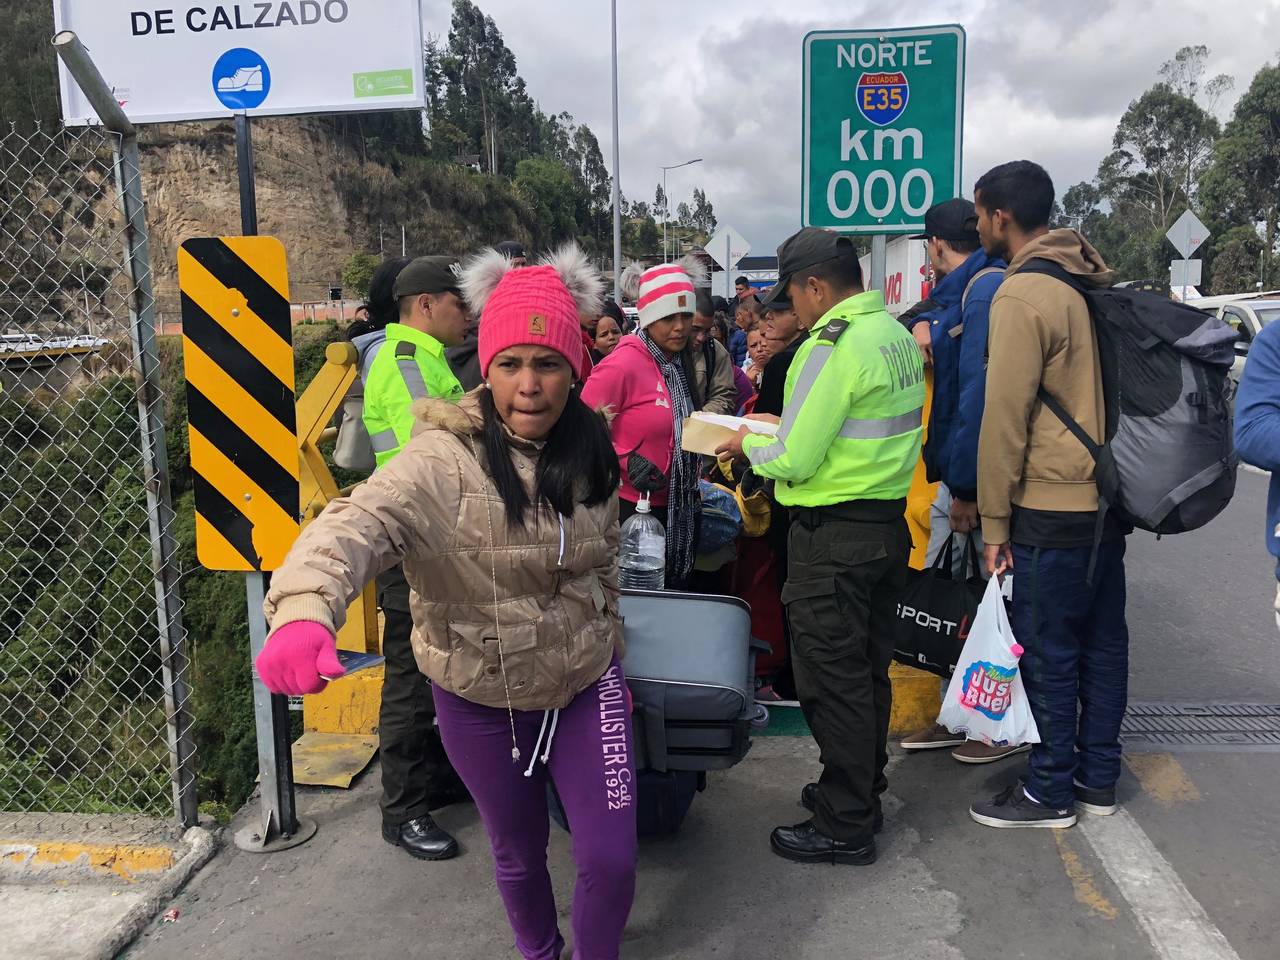 Entran. Cientos de venezolanos cruzaron la frontera de Ecuador debido a la crisis de su país.